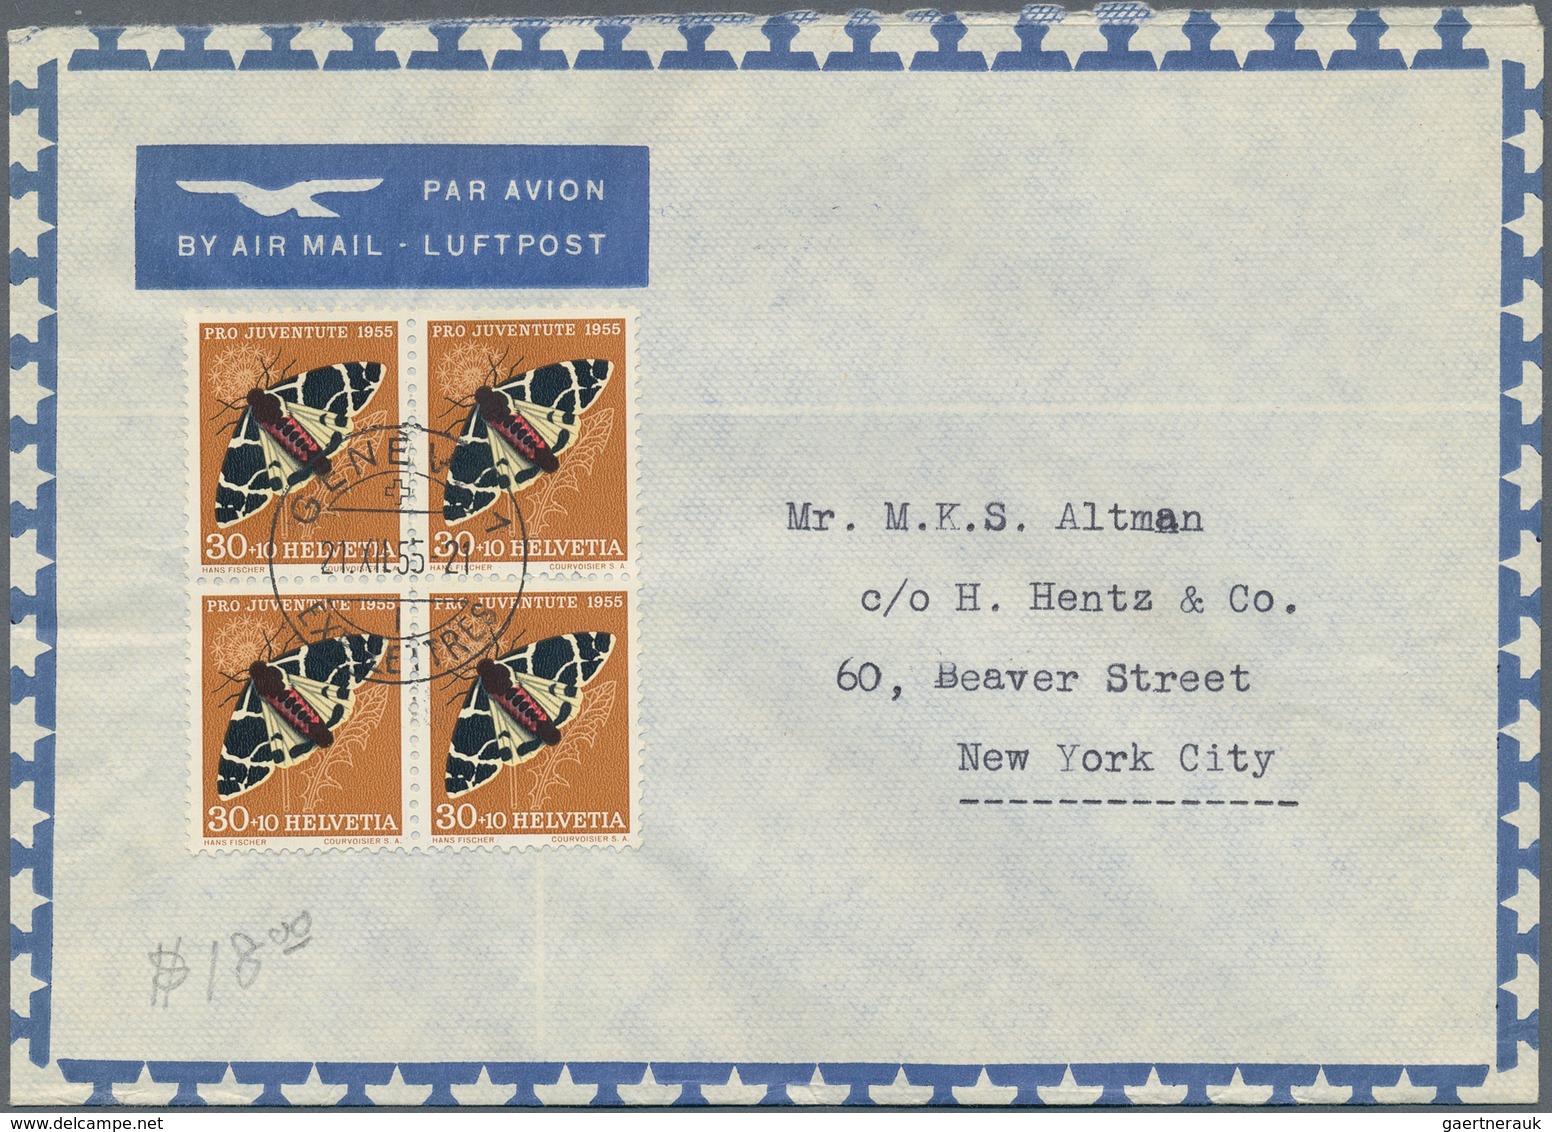 28103 Schweiz: 1940/60(ca.), Sehr schöner Posten von ca. 125 LuPo-Briefen aus einer Schweiz-USA Korrespond